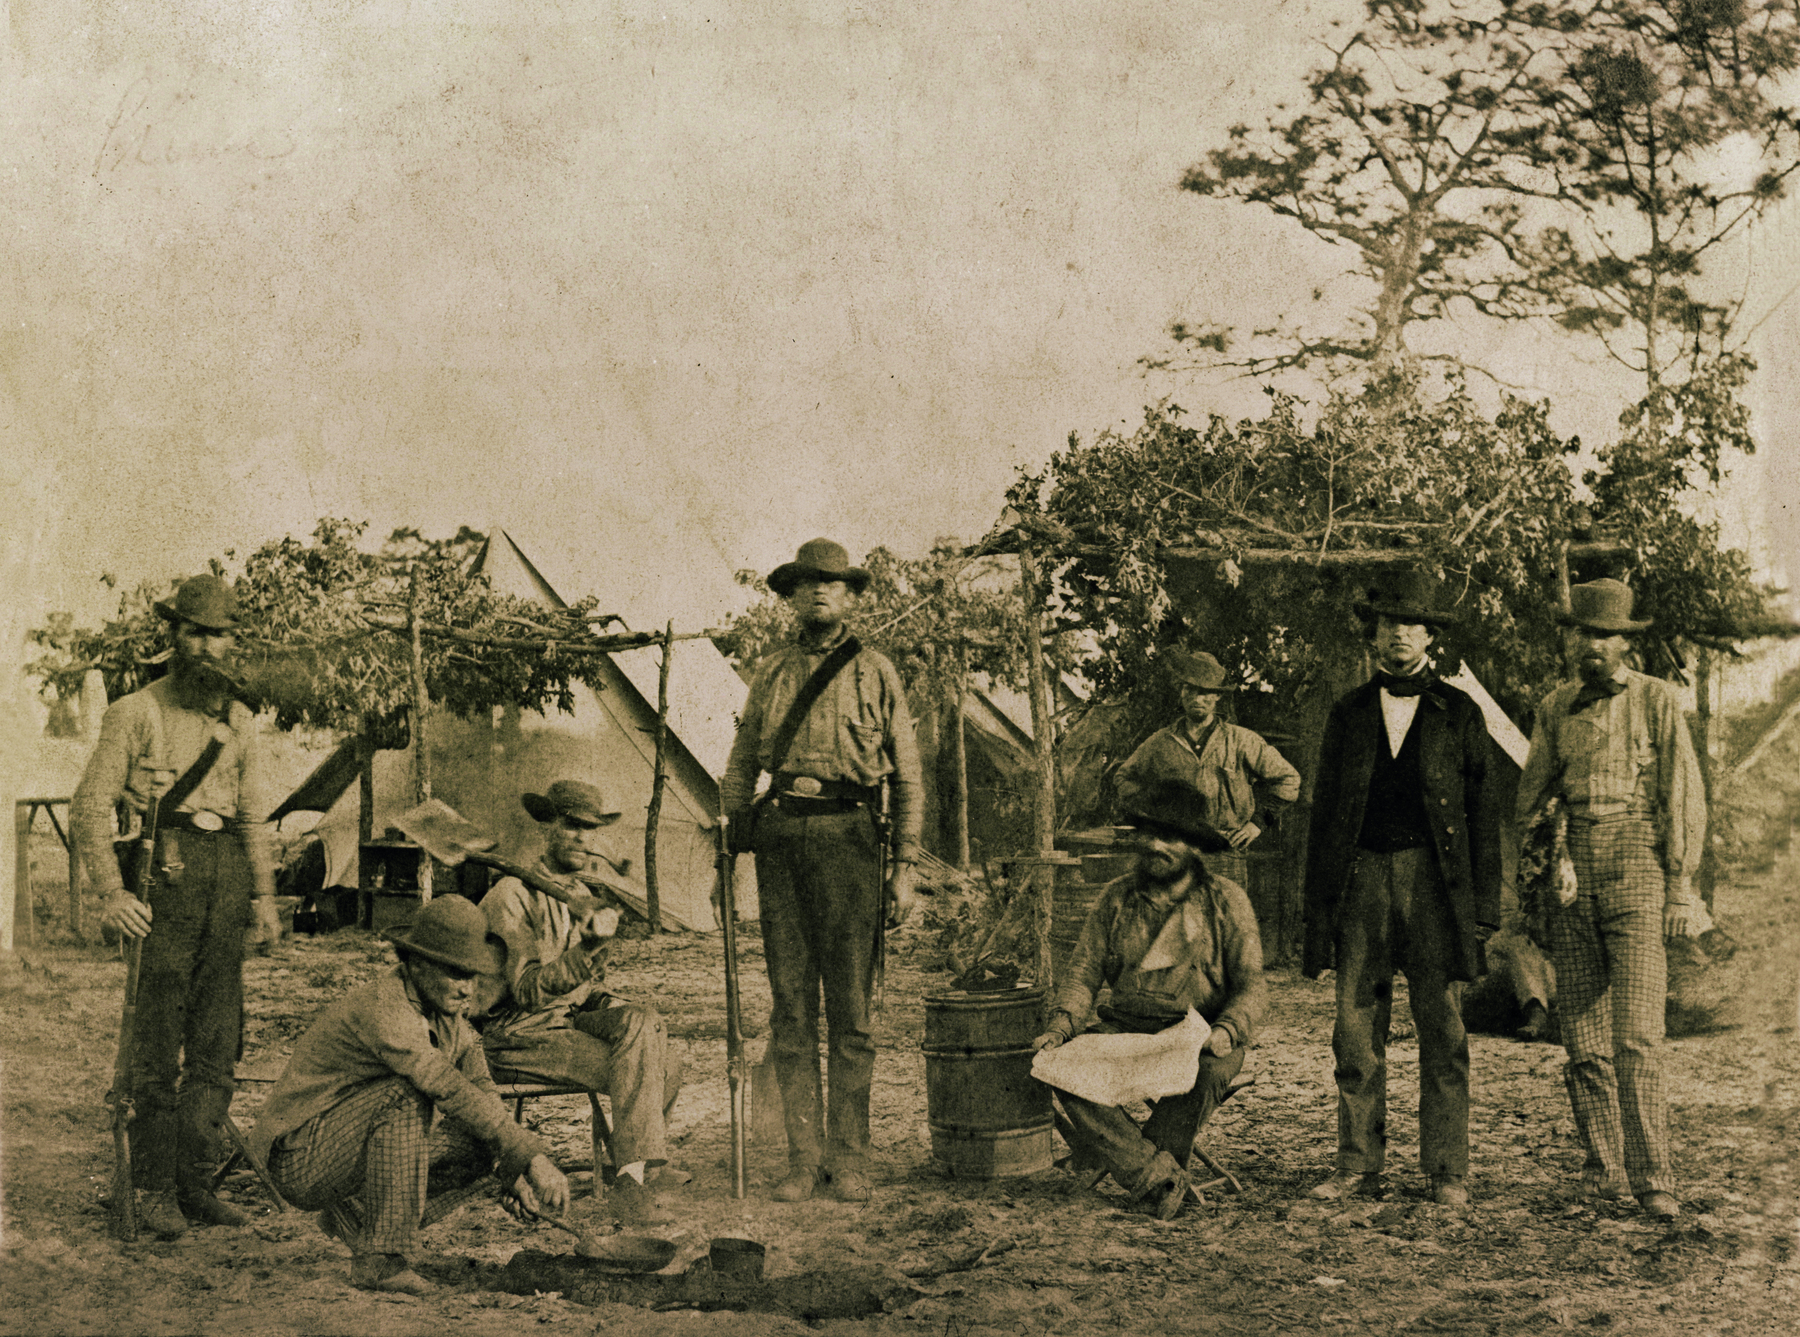 Fotografia em preto e branco. Homens lado a lado, uns em pé, outros agachados no solo, alguns portando armas de fogo. Em segundo plano, árvores e algumas pequenas cabanas.